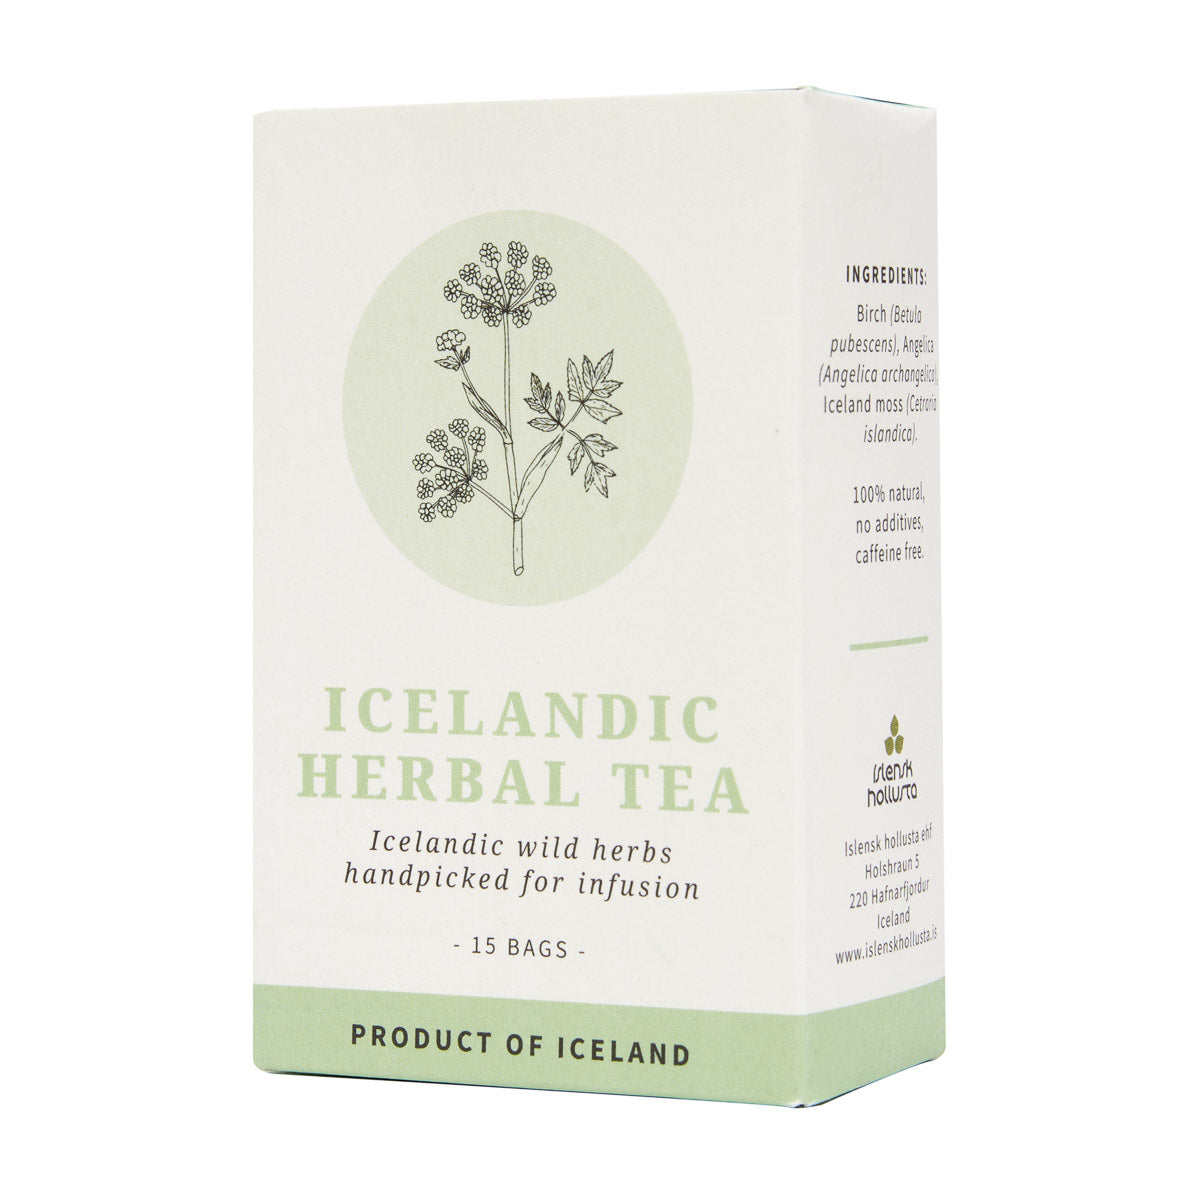 Icelandic Herbal Tea Bags (15 bags) - Islensk Hollusta